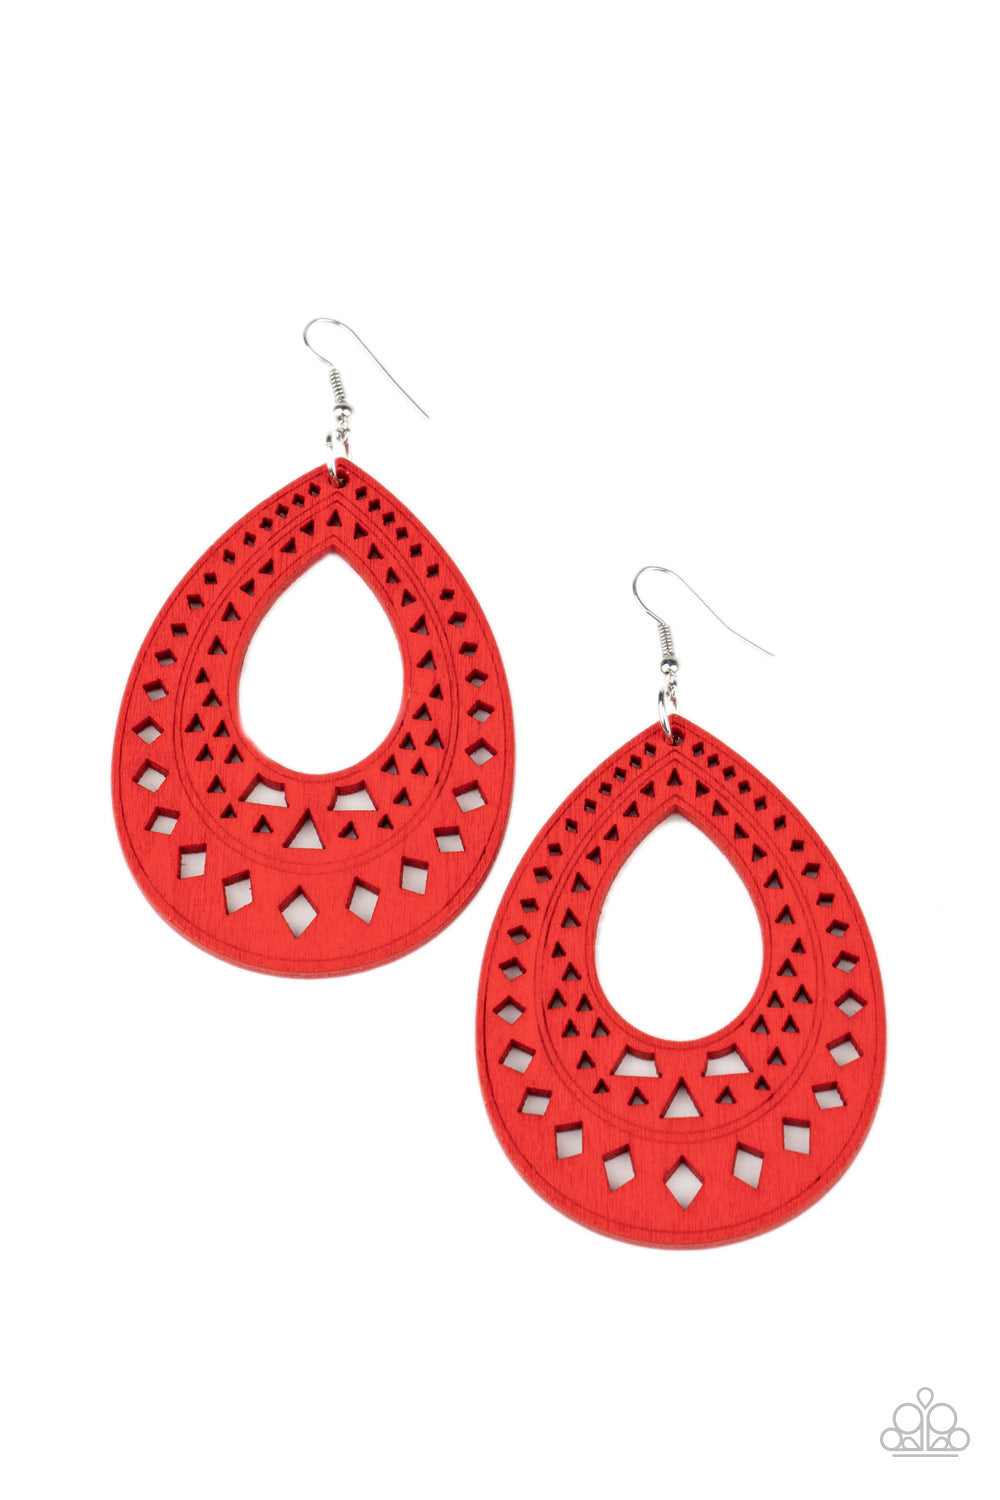 Belize Beauty - Red earring 999